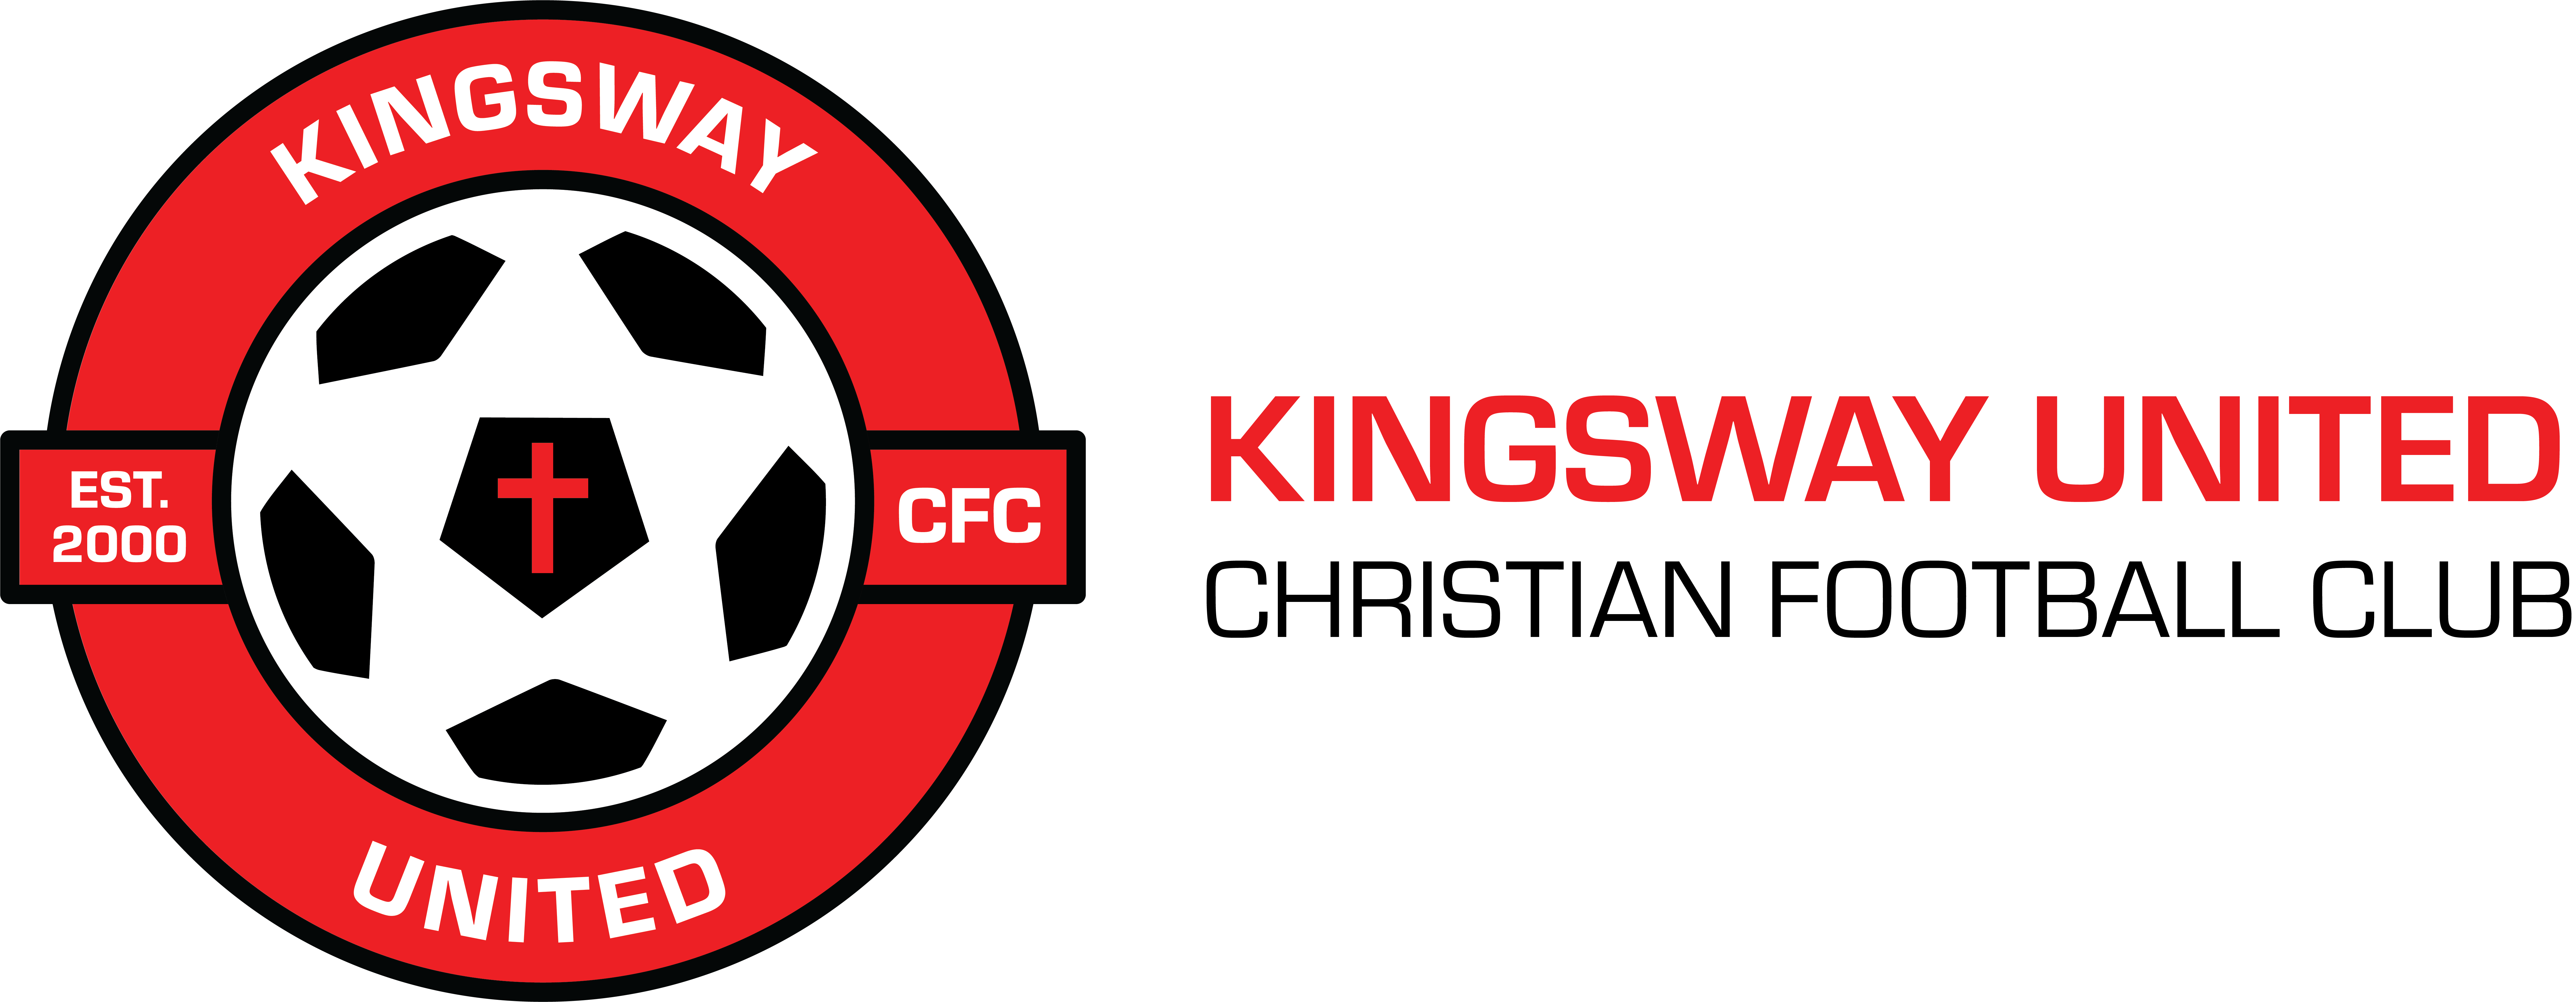 Kingsway United